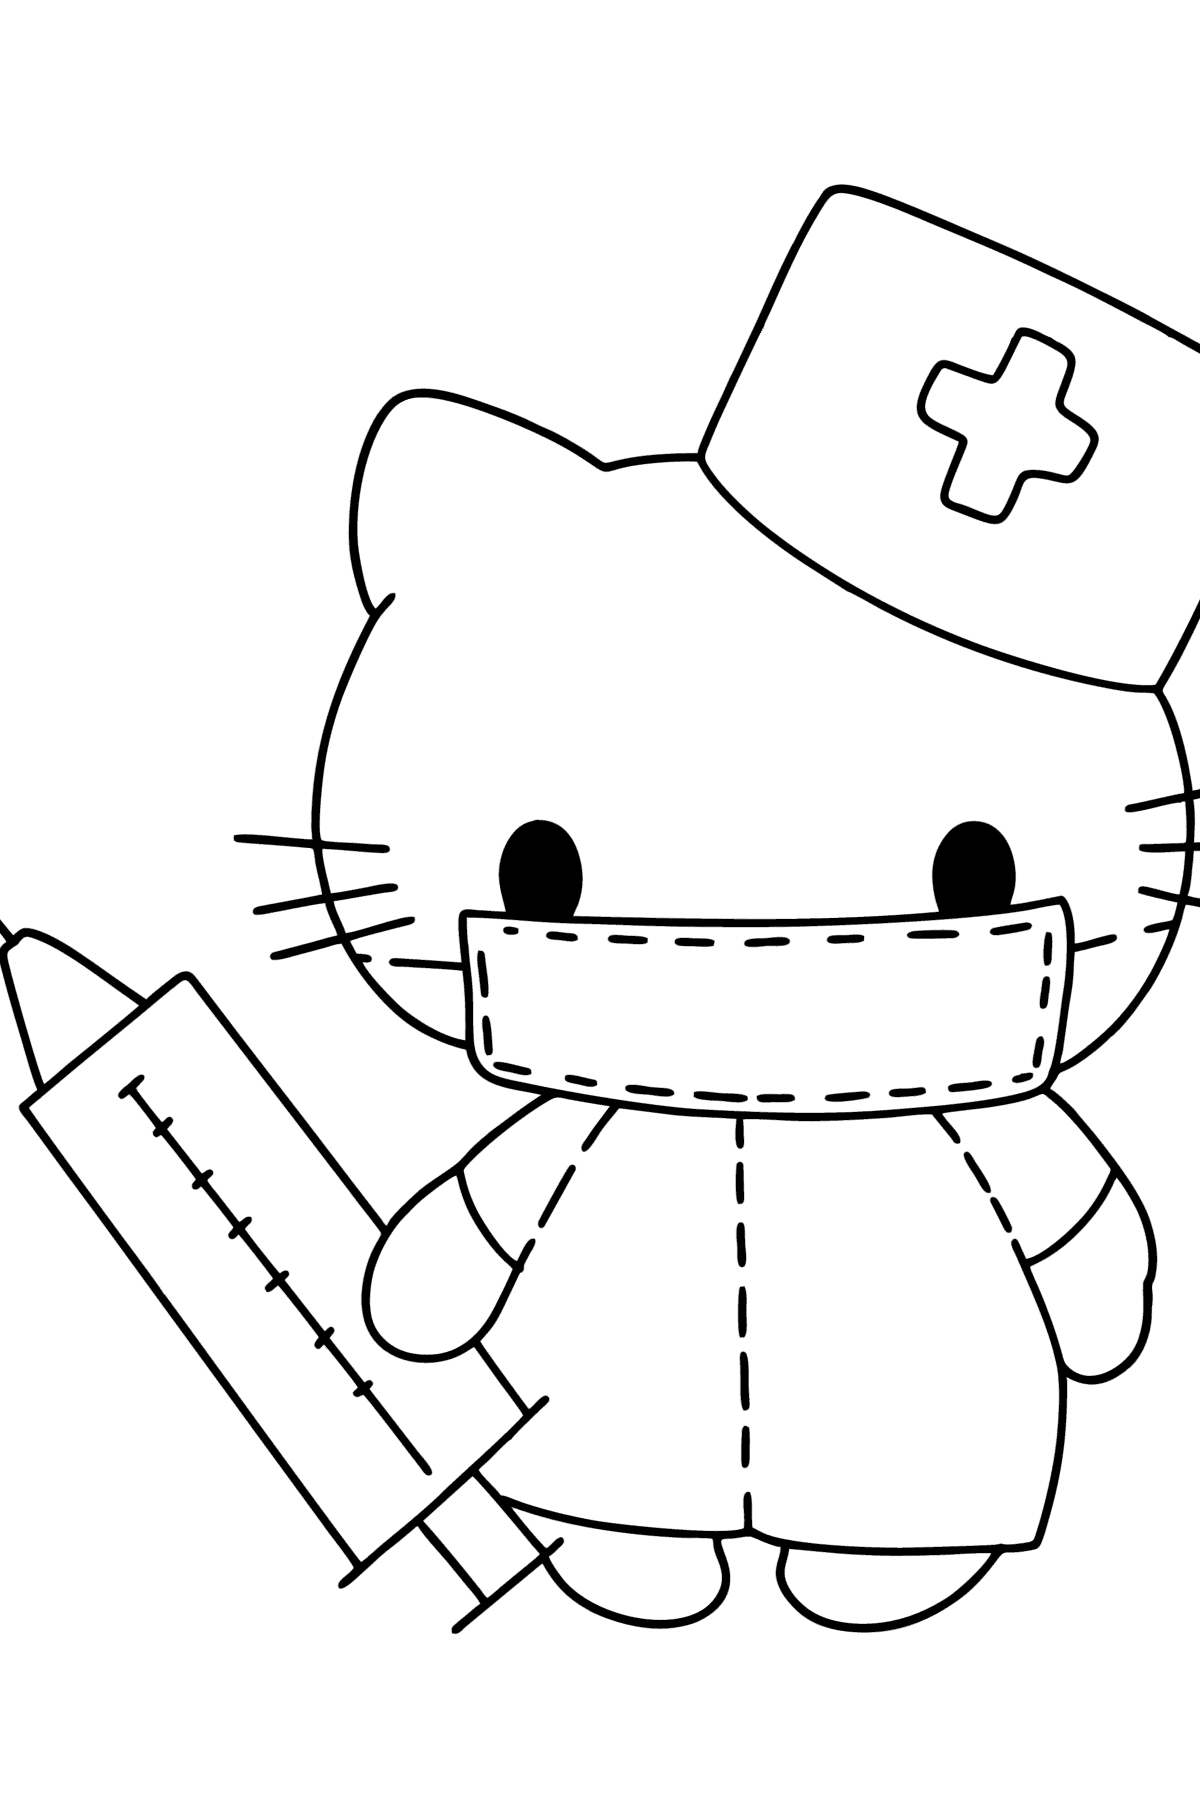 Tegning til fargelegging Hello Kitty sykepleier - Tegninger til fargelegging for barn